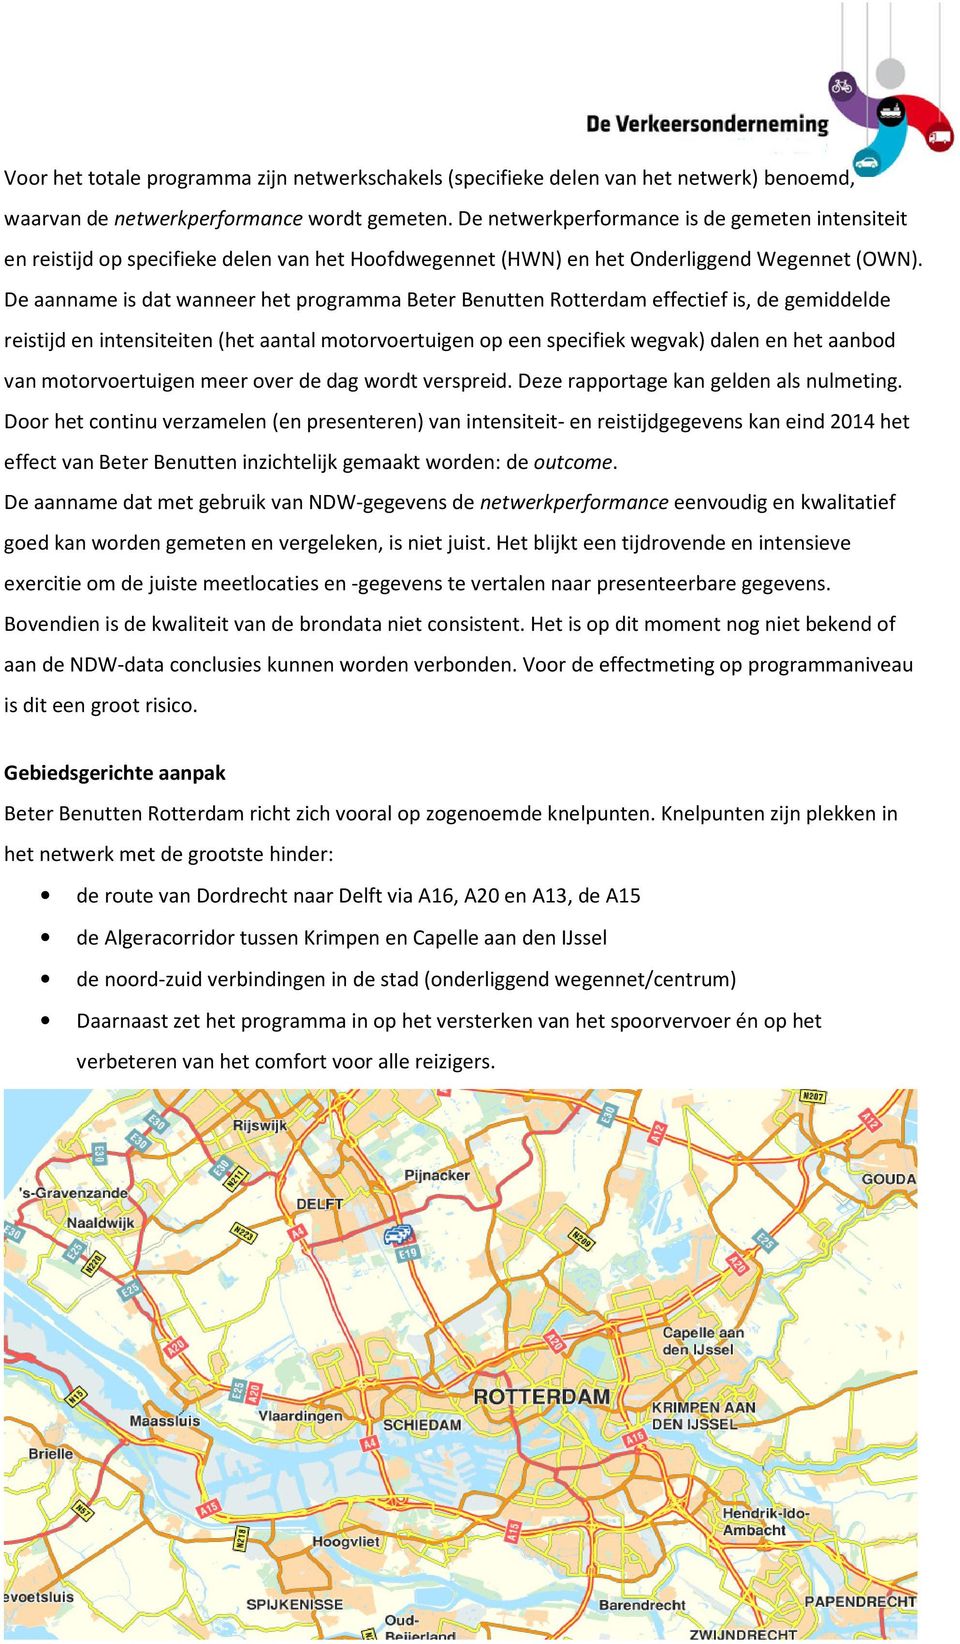 De aanname is dat wanneer het programma Beter Benutten Rotterdam effectief is, de gemiddelde reistijd en intensiteiten (het aantal motorvoertuigen op een specifiek wegvak) dalen en het aanbod van